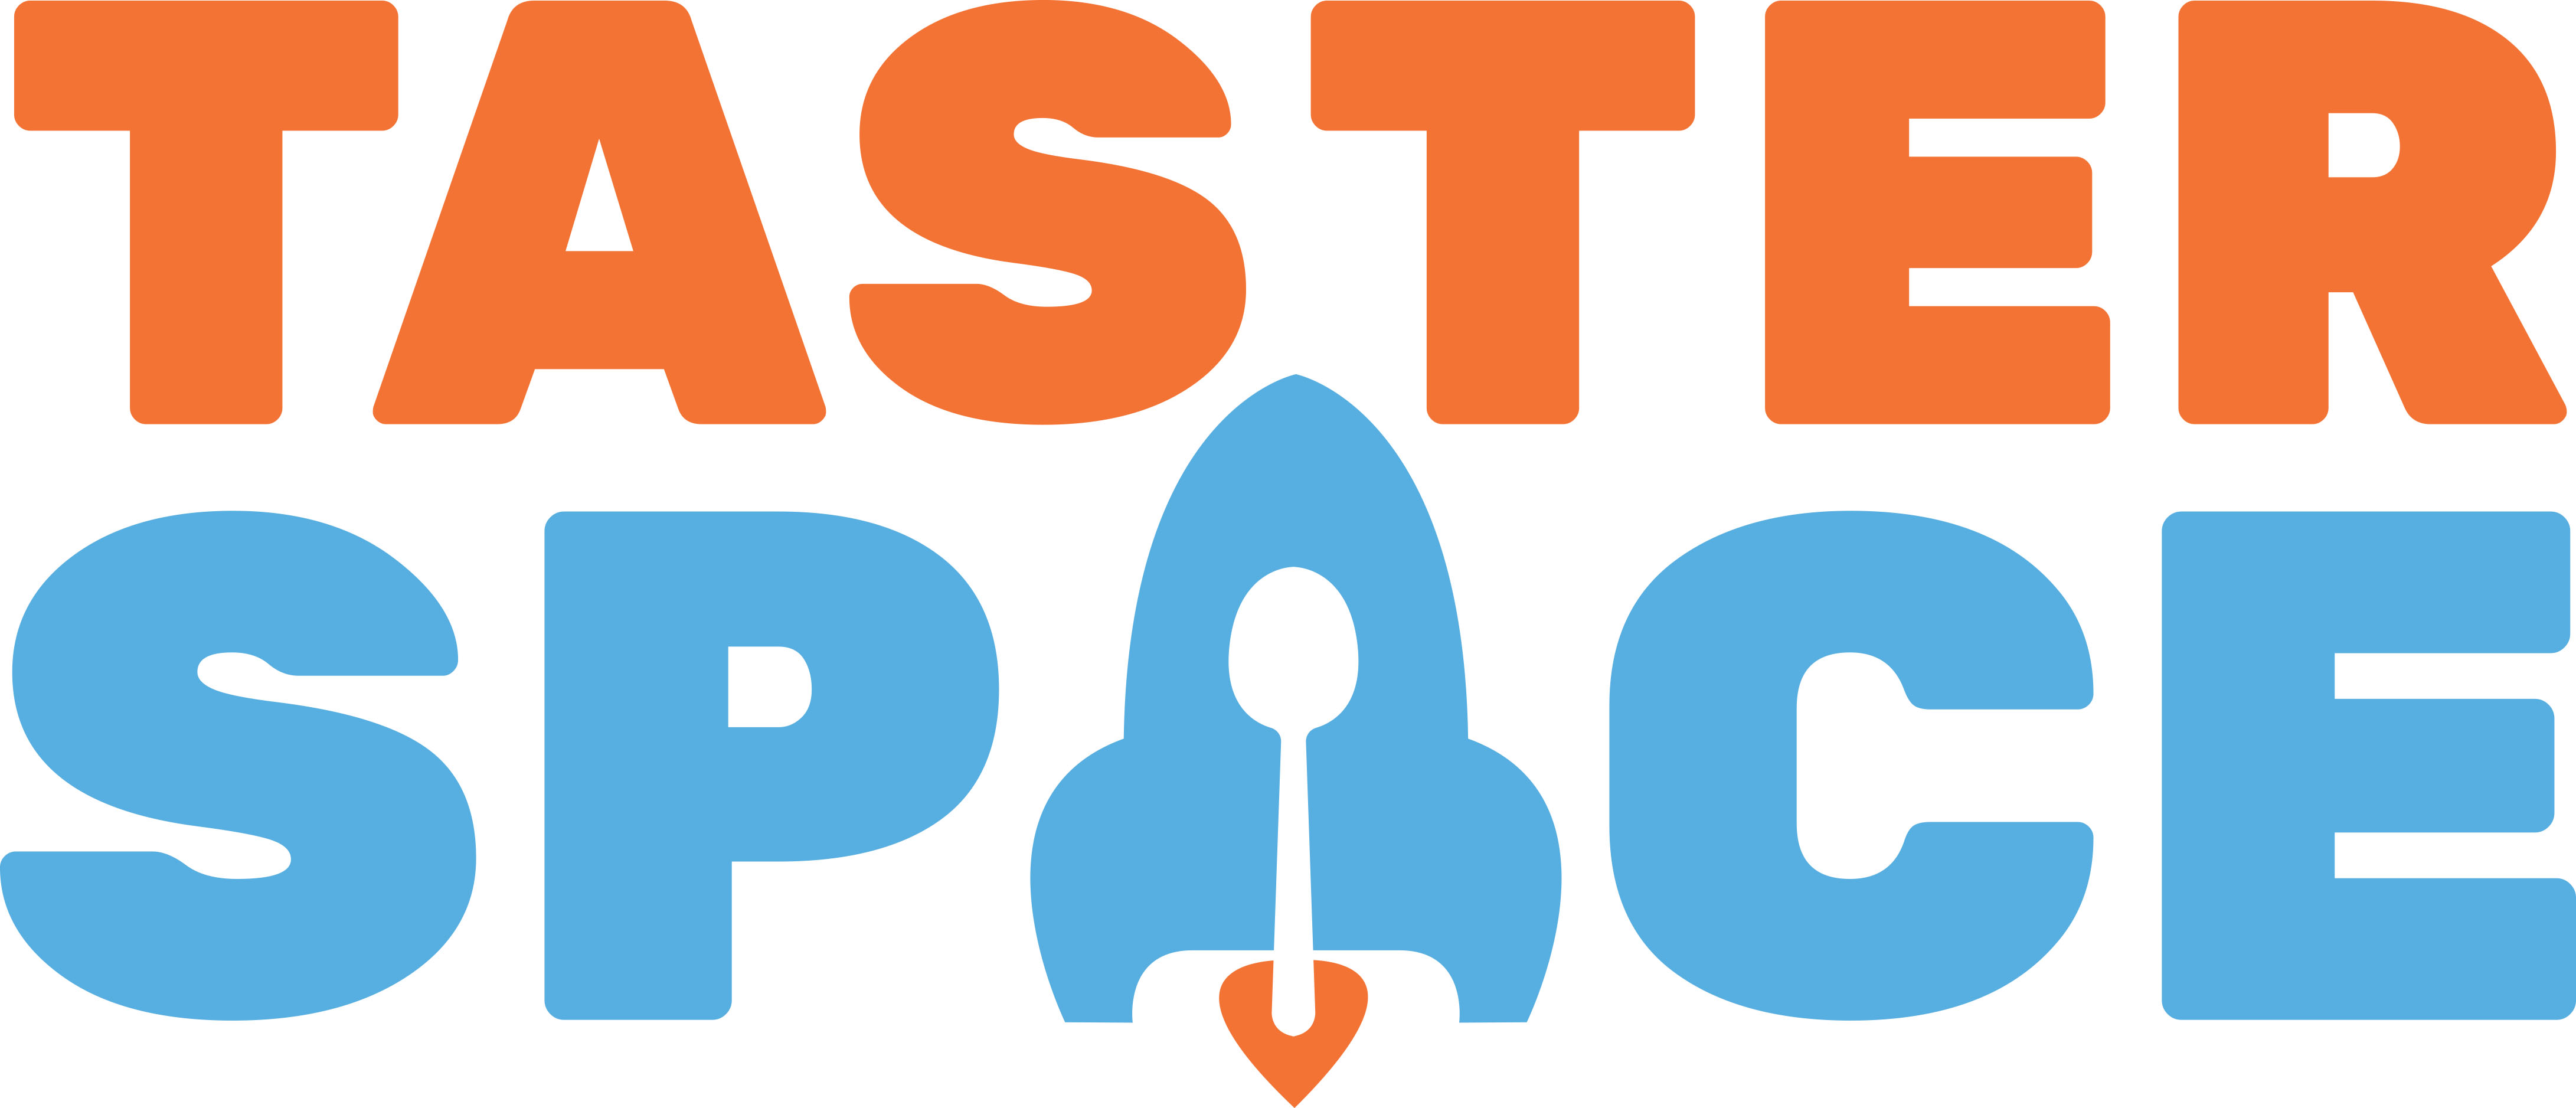 Taster Space  Desert Spoon Food Hub